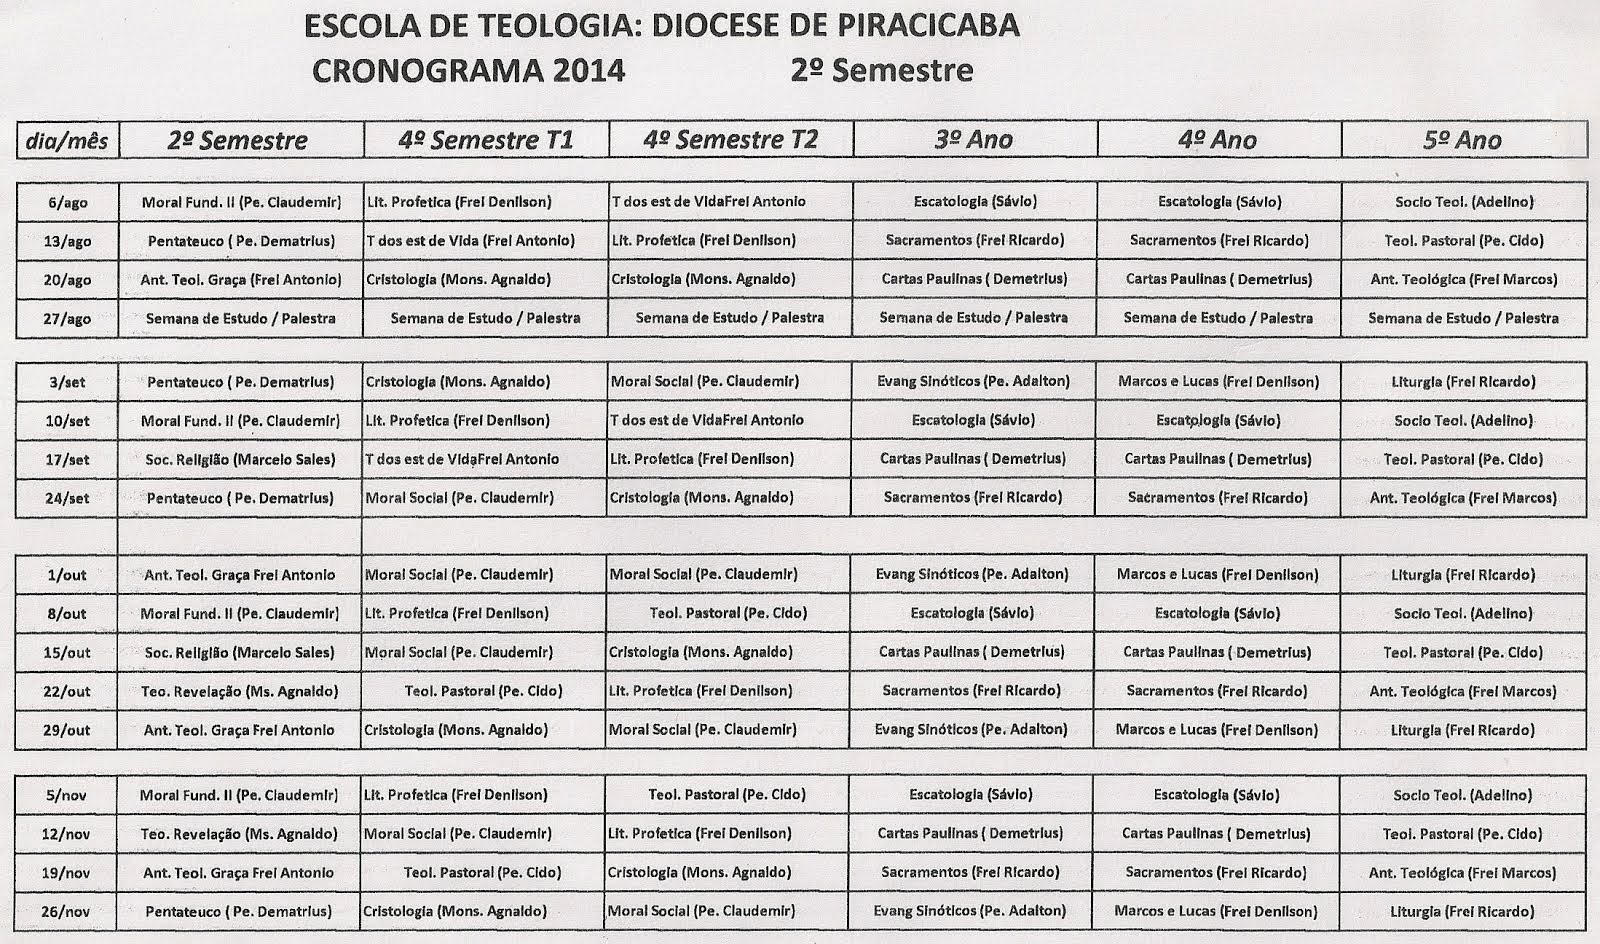 TEOLOGIA PARA LEIGOS - DIOCESE DE PIRACICABA: